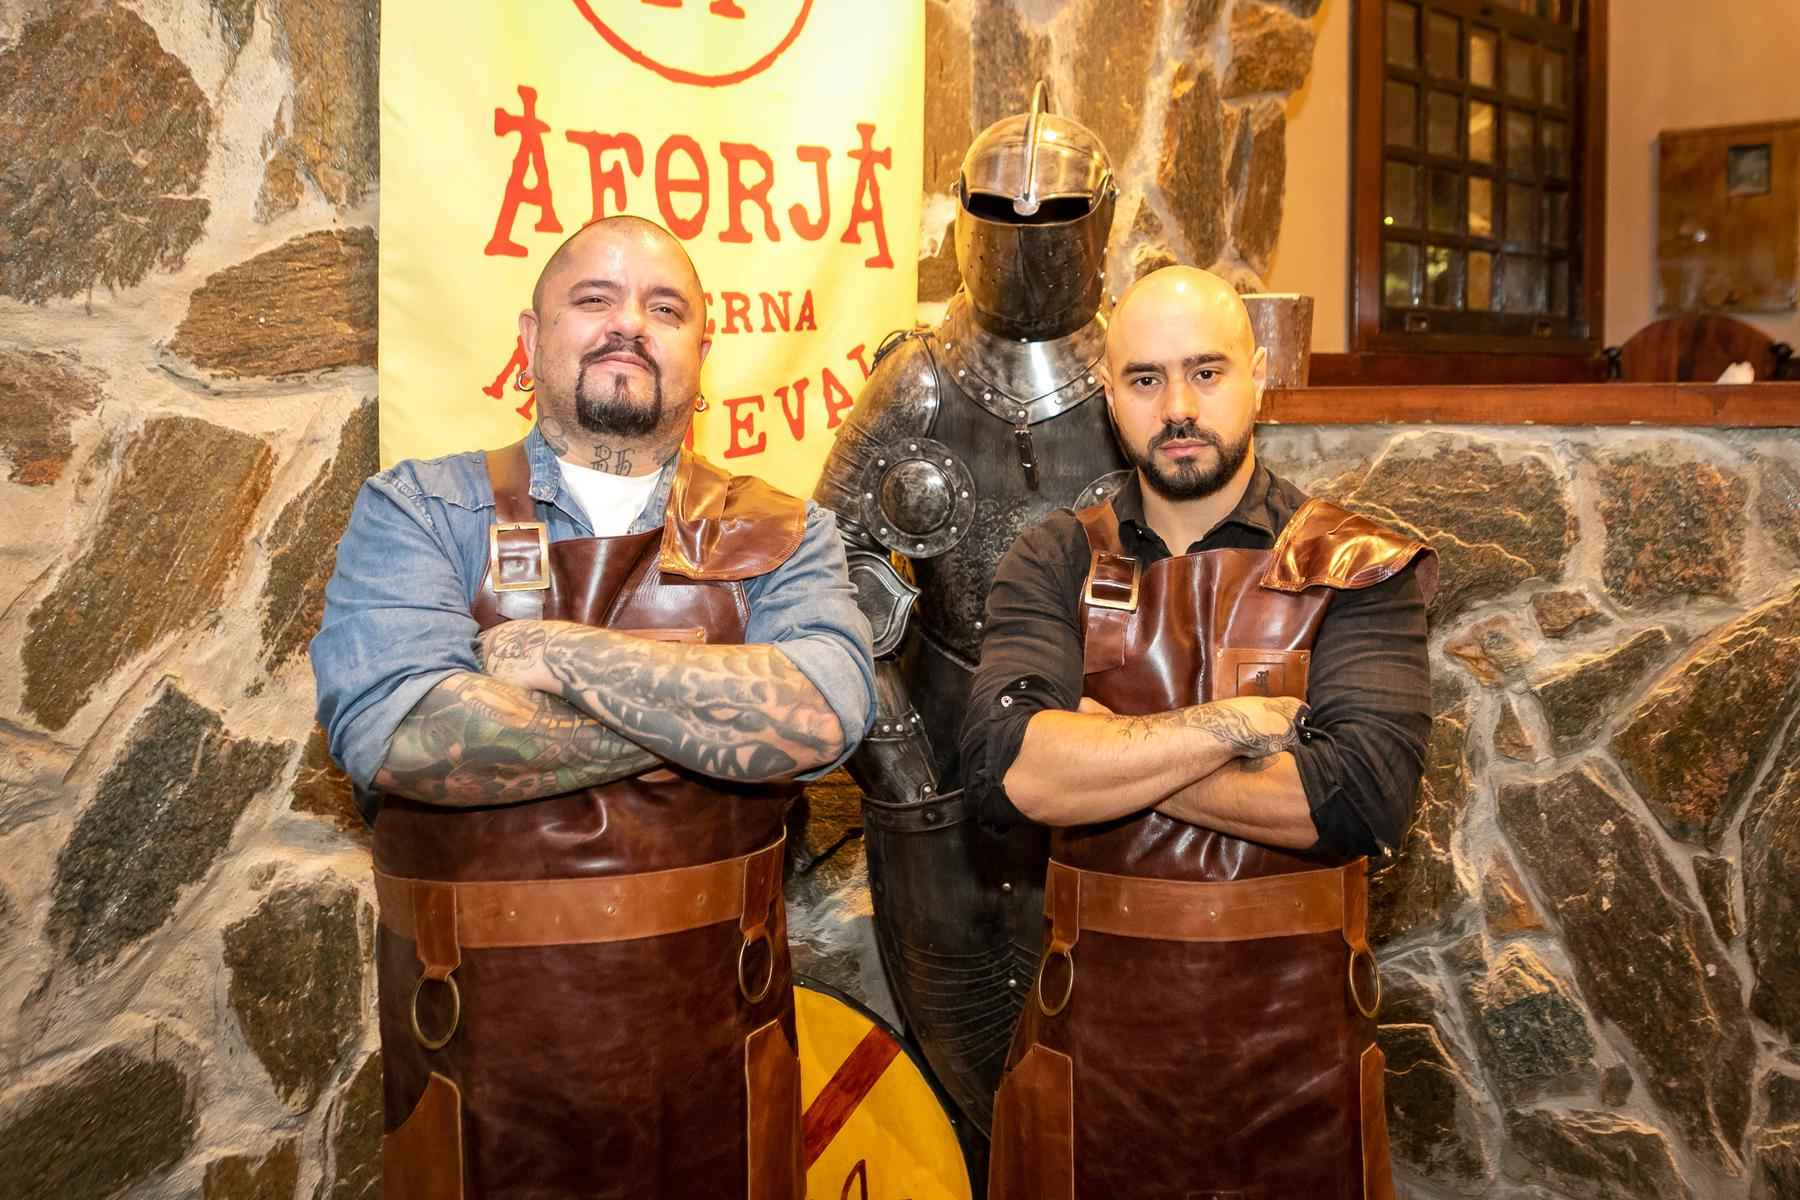 Taverna medieval serve banquete para comer com as mãos - Thiago Miranda/Divulgação